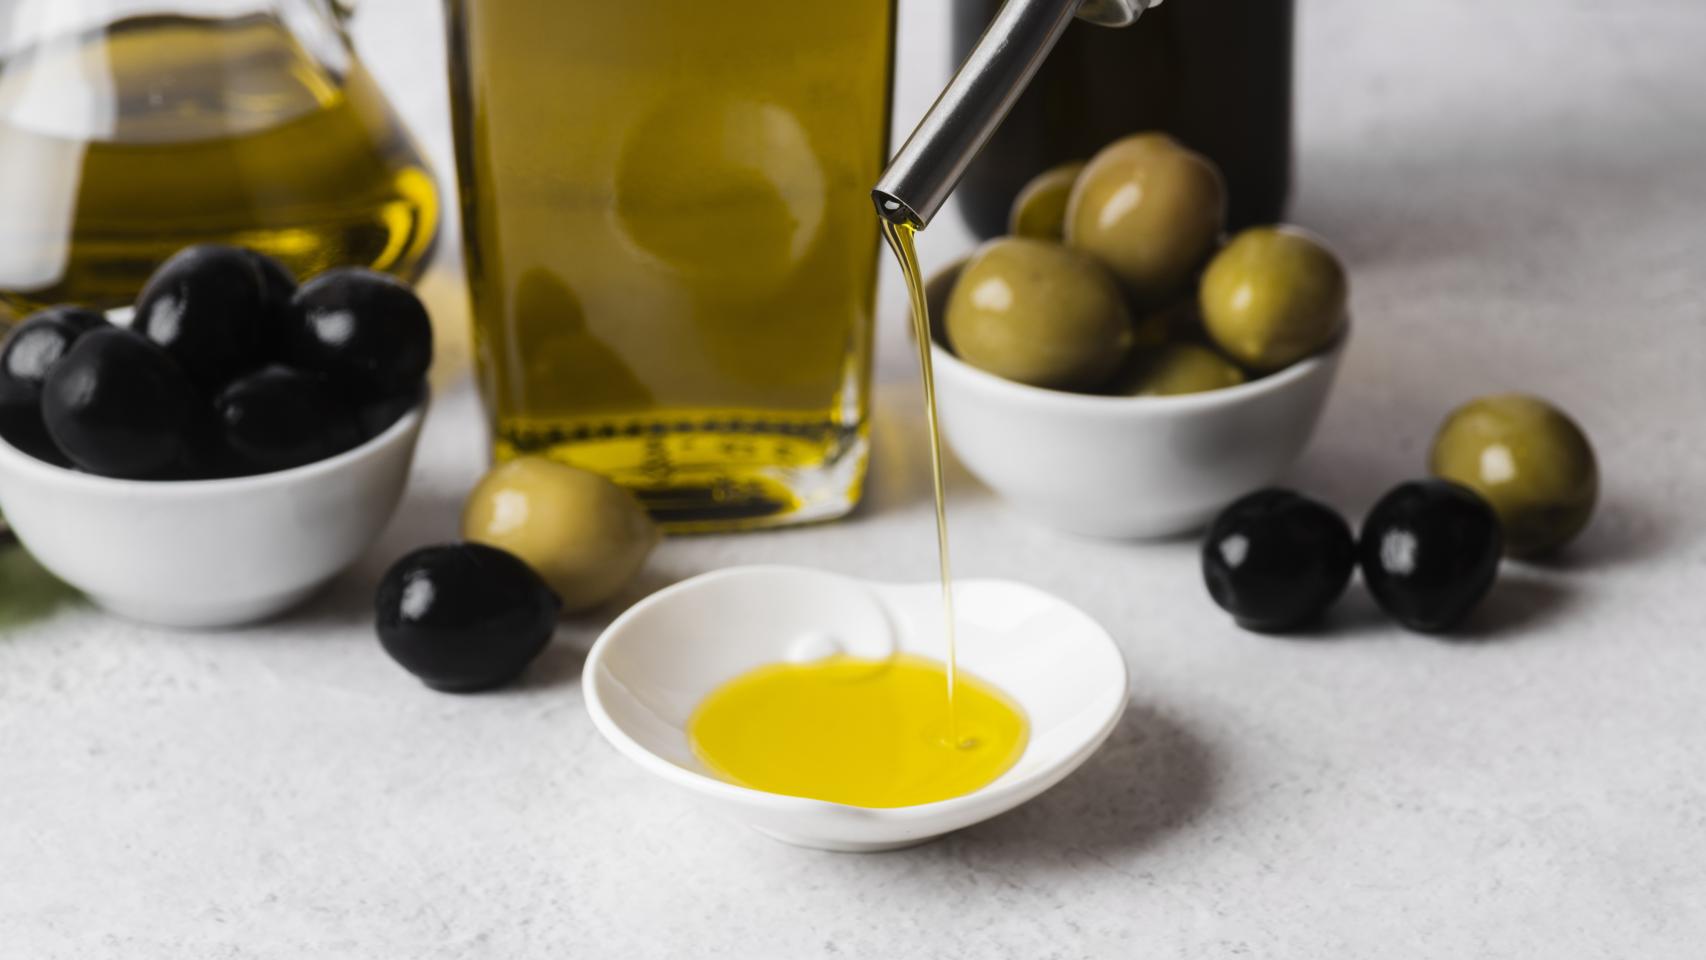 Mitos y verdades del aceite de oliva - The New York Times